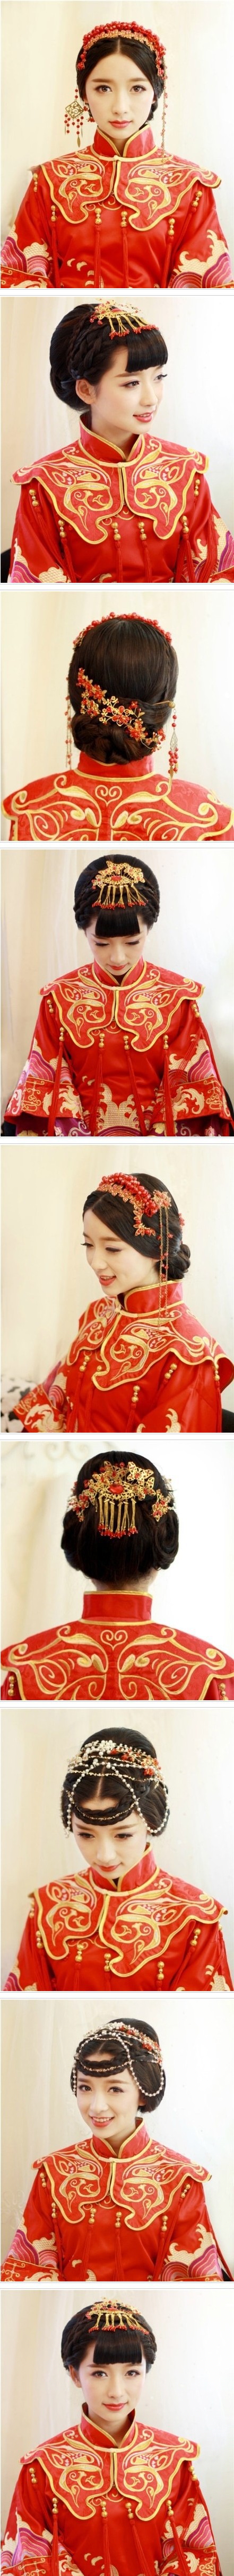 中式婚礼新娘发型图片分享